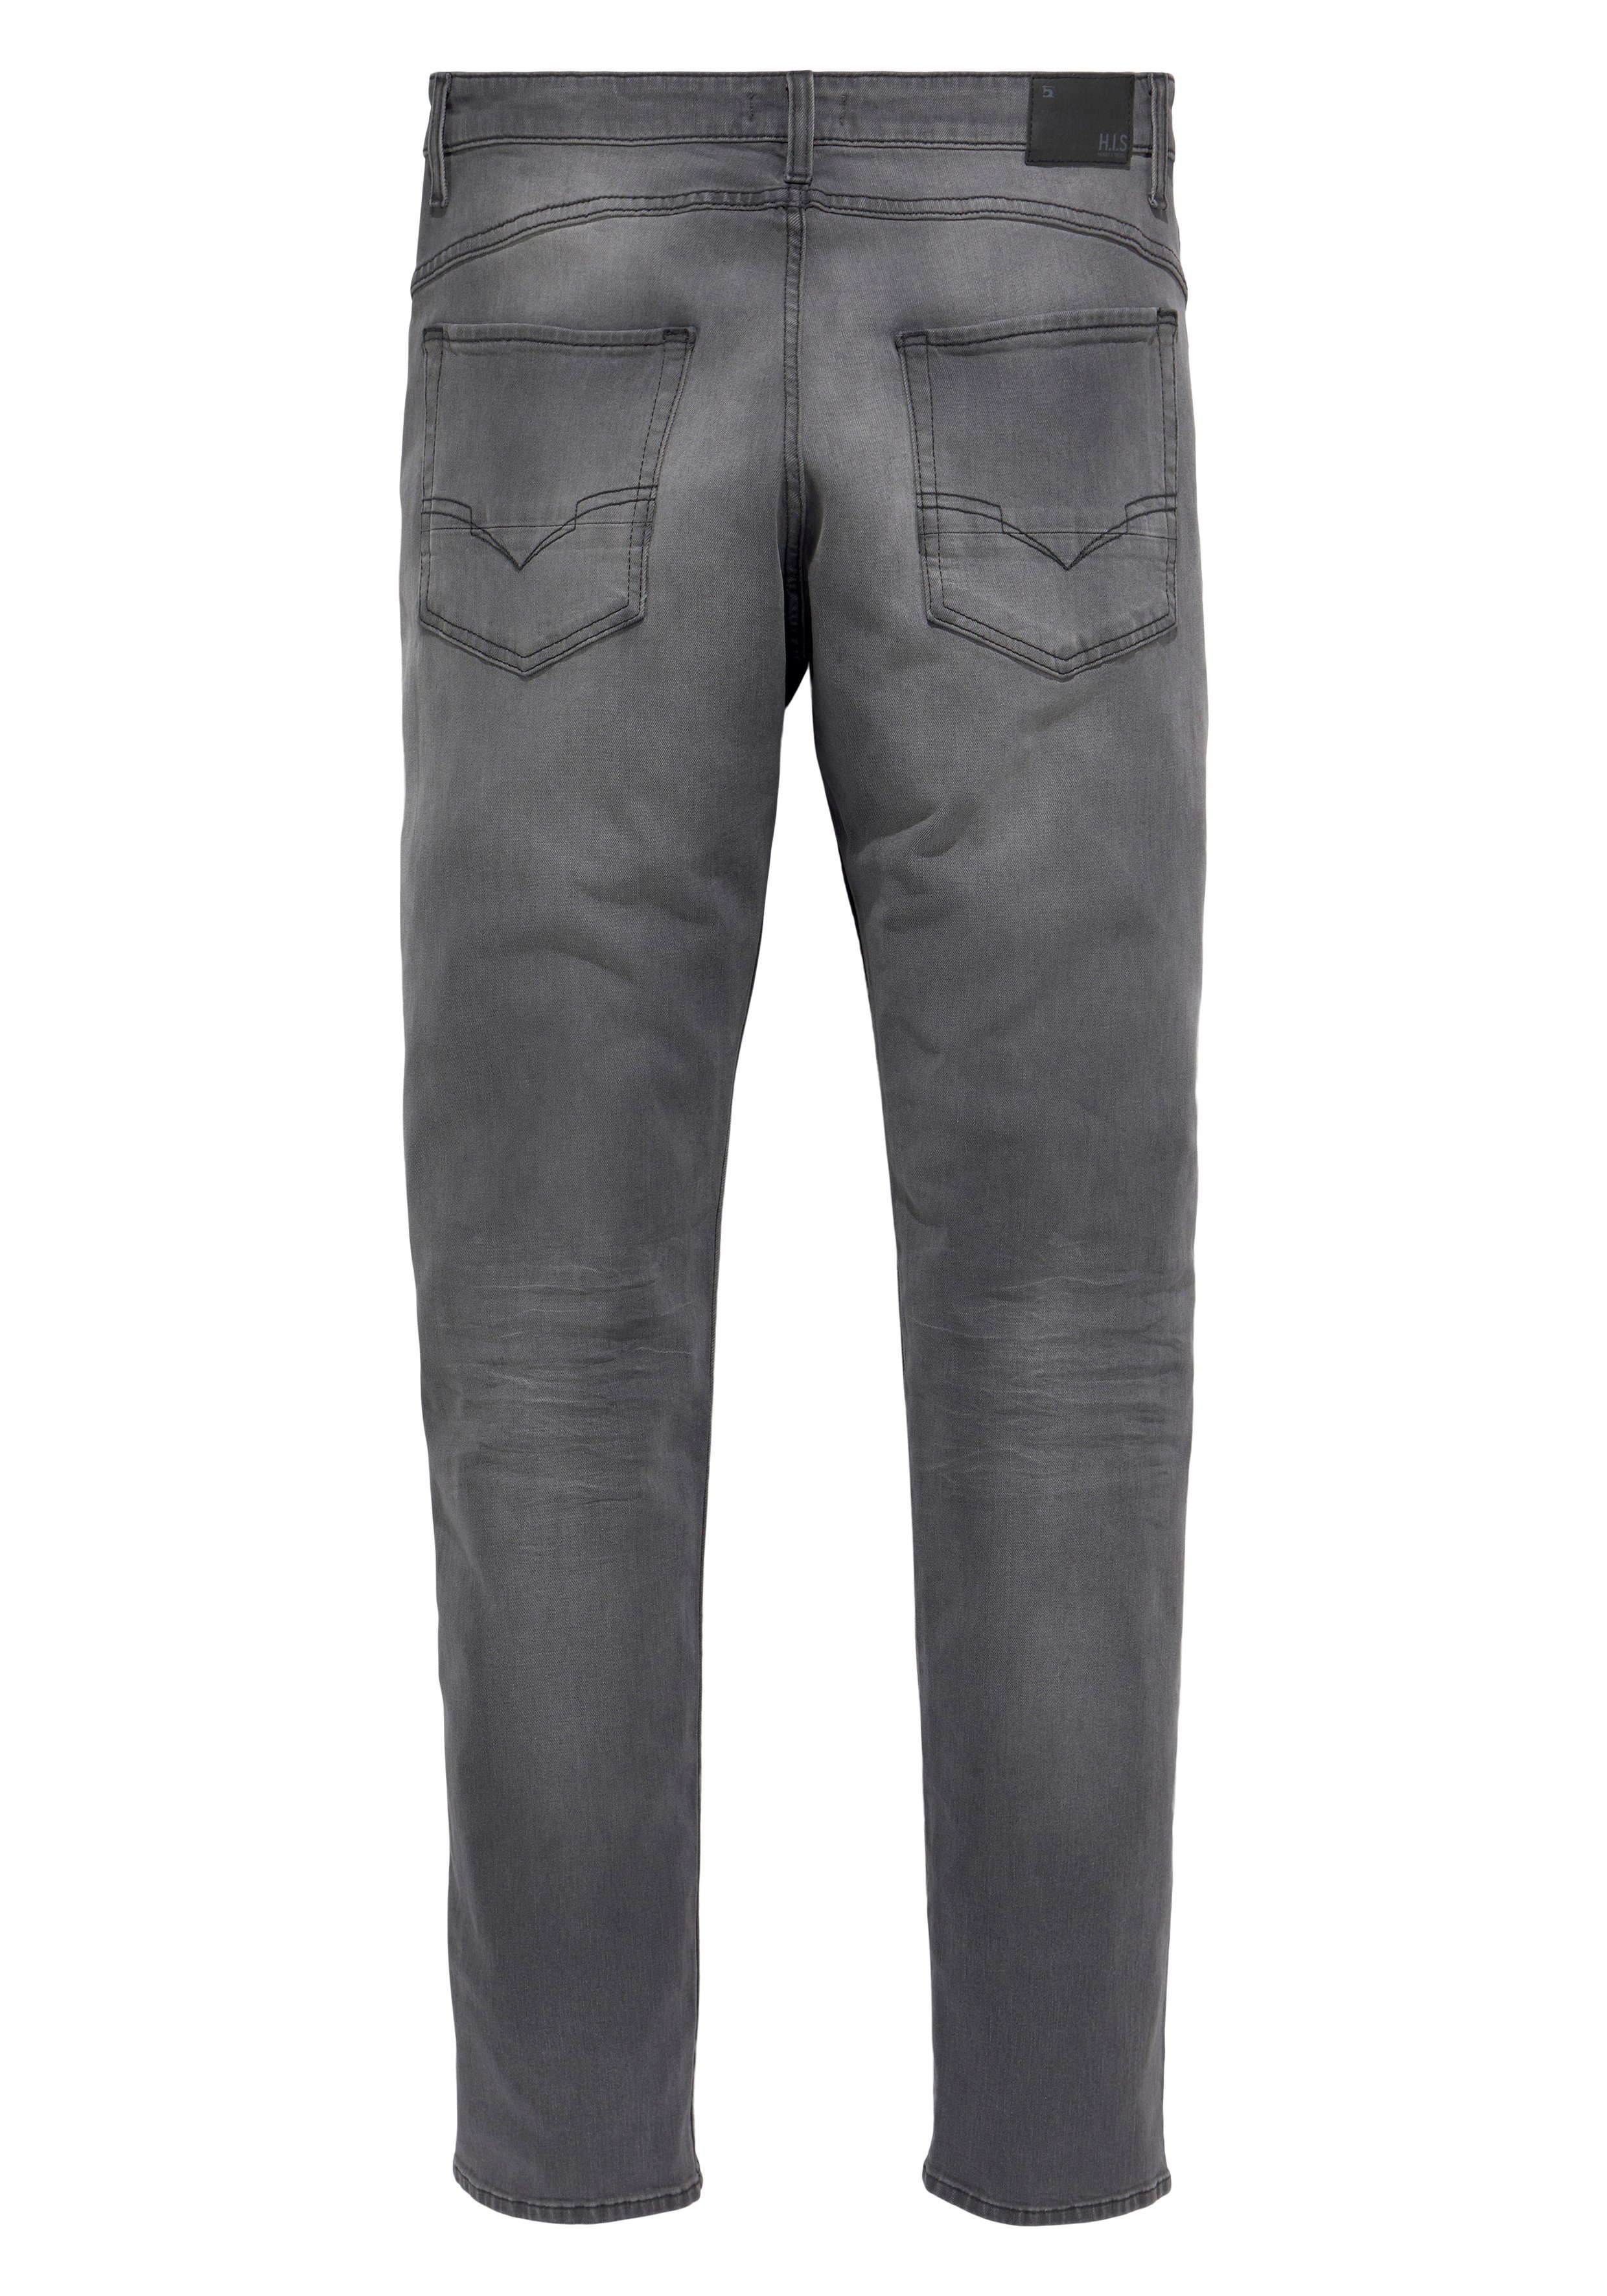 Ökologische, Ozon Tapered-fit-Jeans wassersparende H.I.S grey CIAN dark Wash durch Produktion